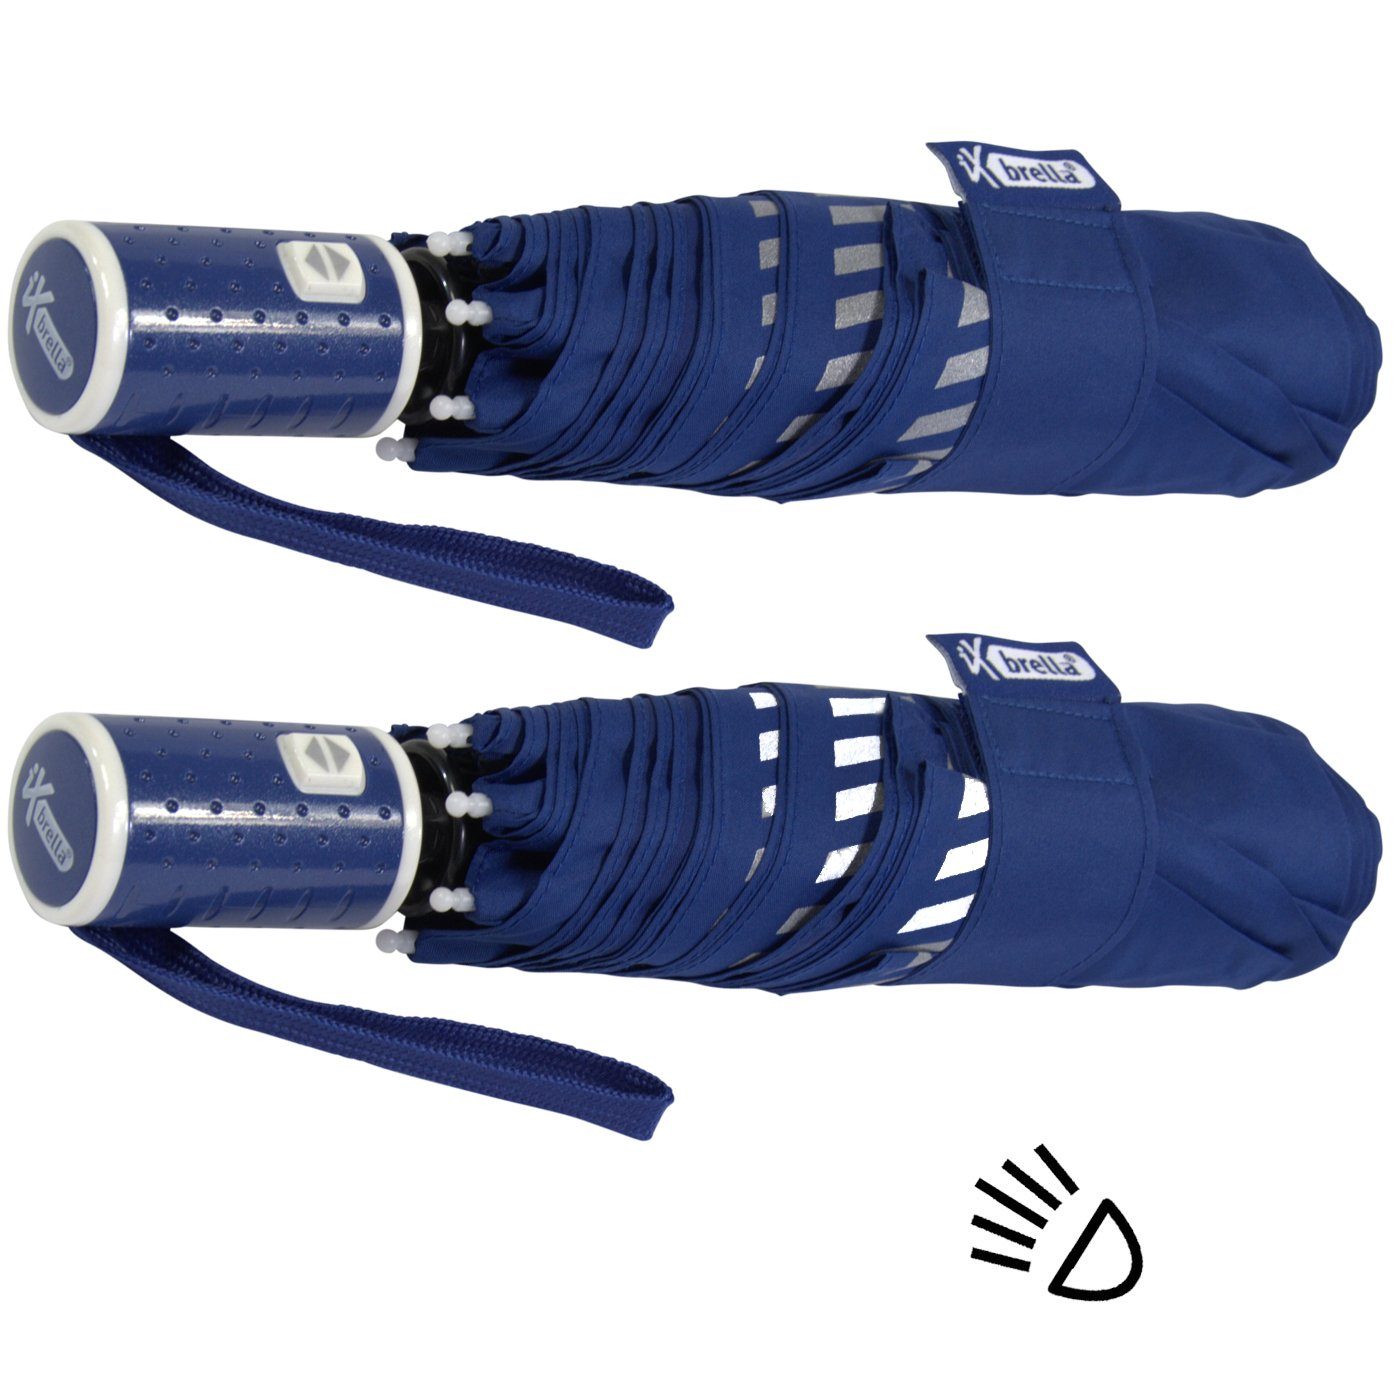 iX-brella Taschenregenschirm Reflex-Streifen Kinderschirm durch mit Sicherheit reflektierend, - Auf-Zu-Automatik, blau